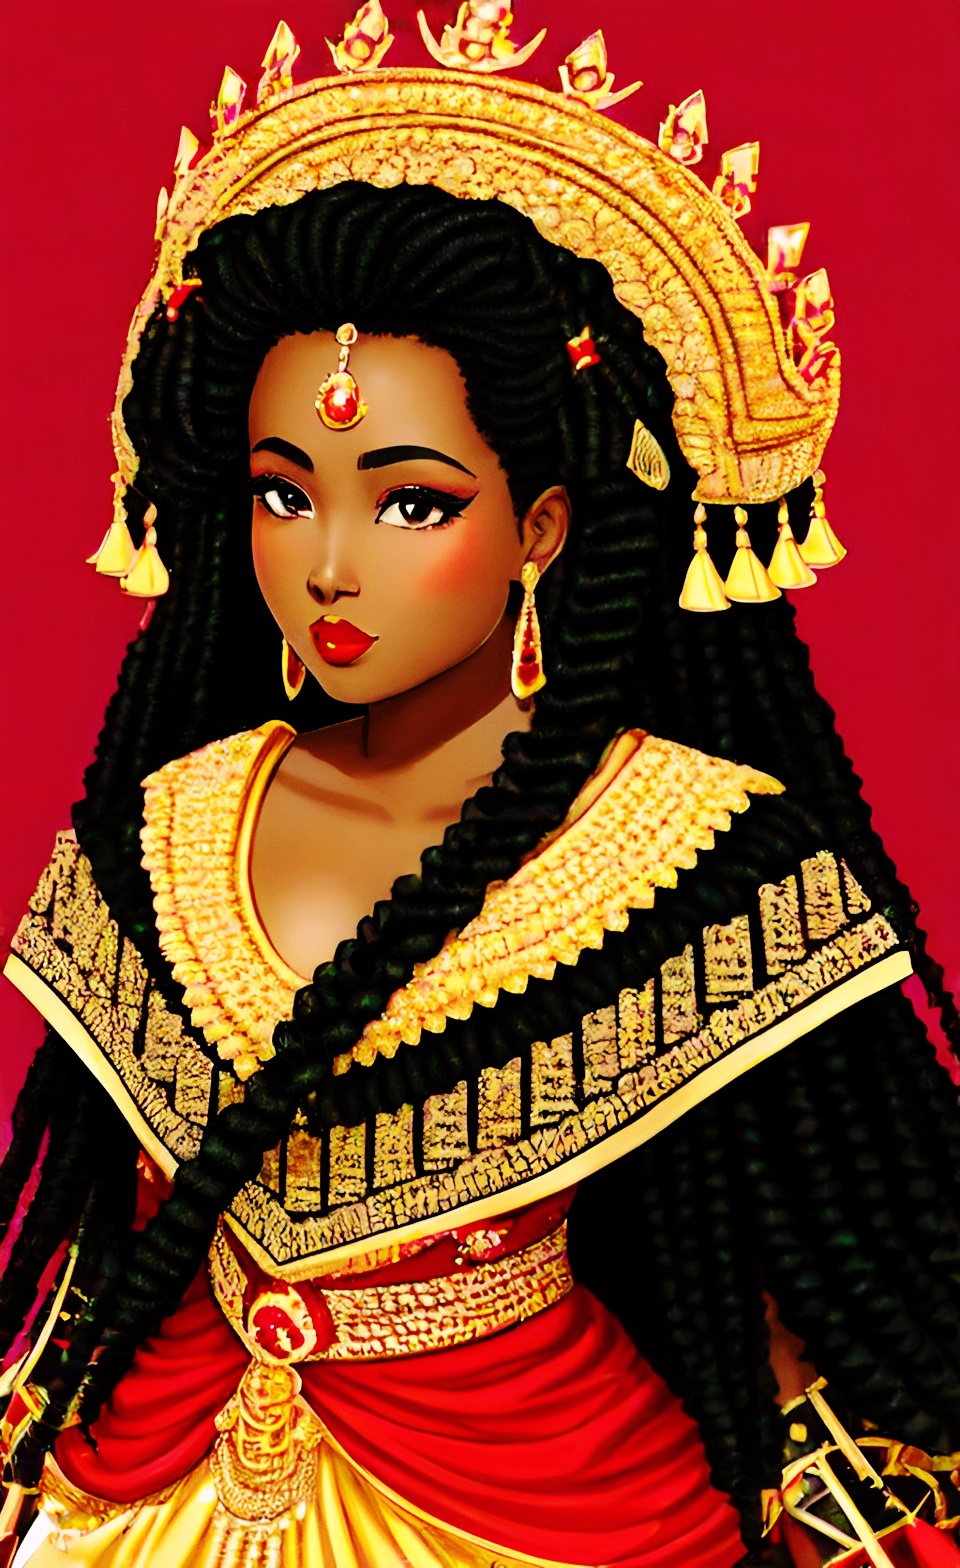 Mixed-race Queen of SHEBA art work Mixshe10